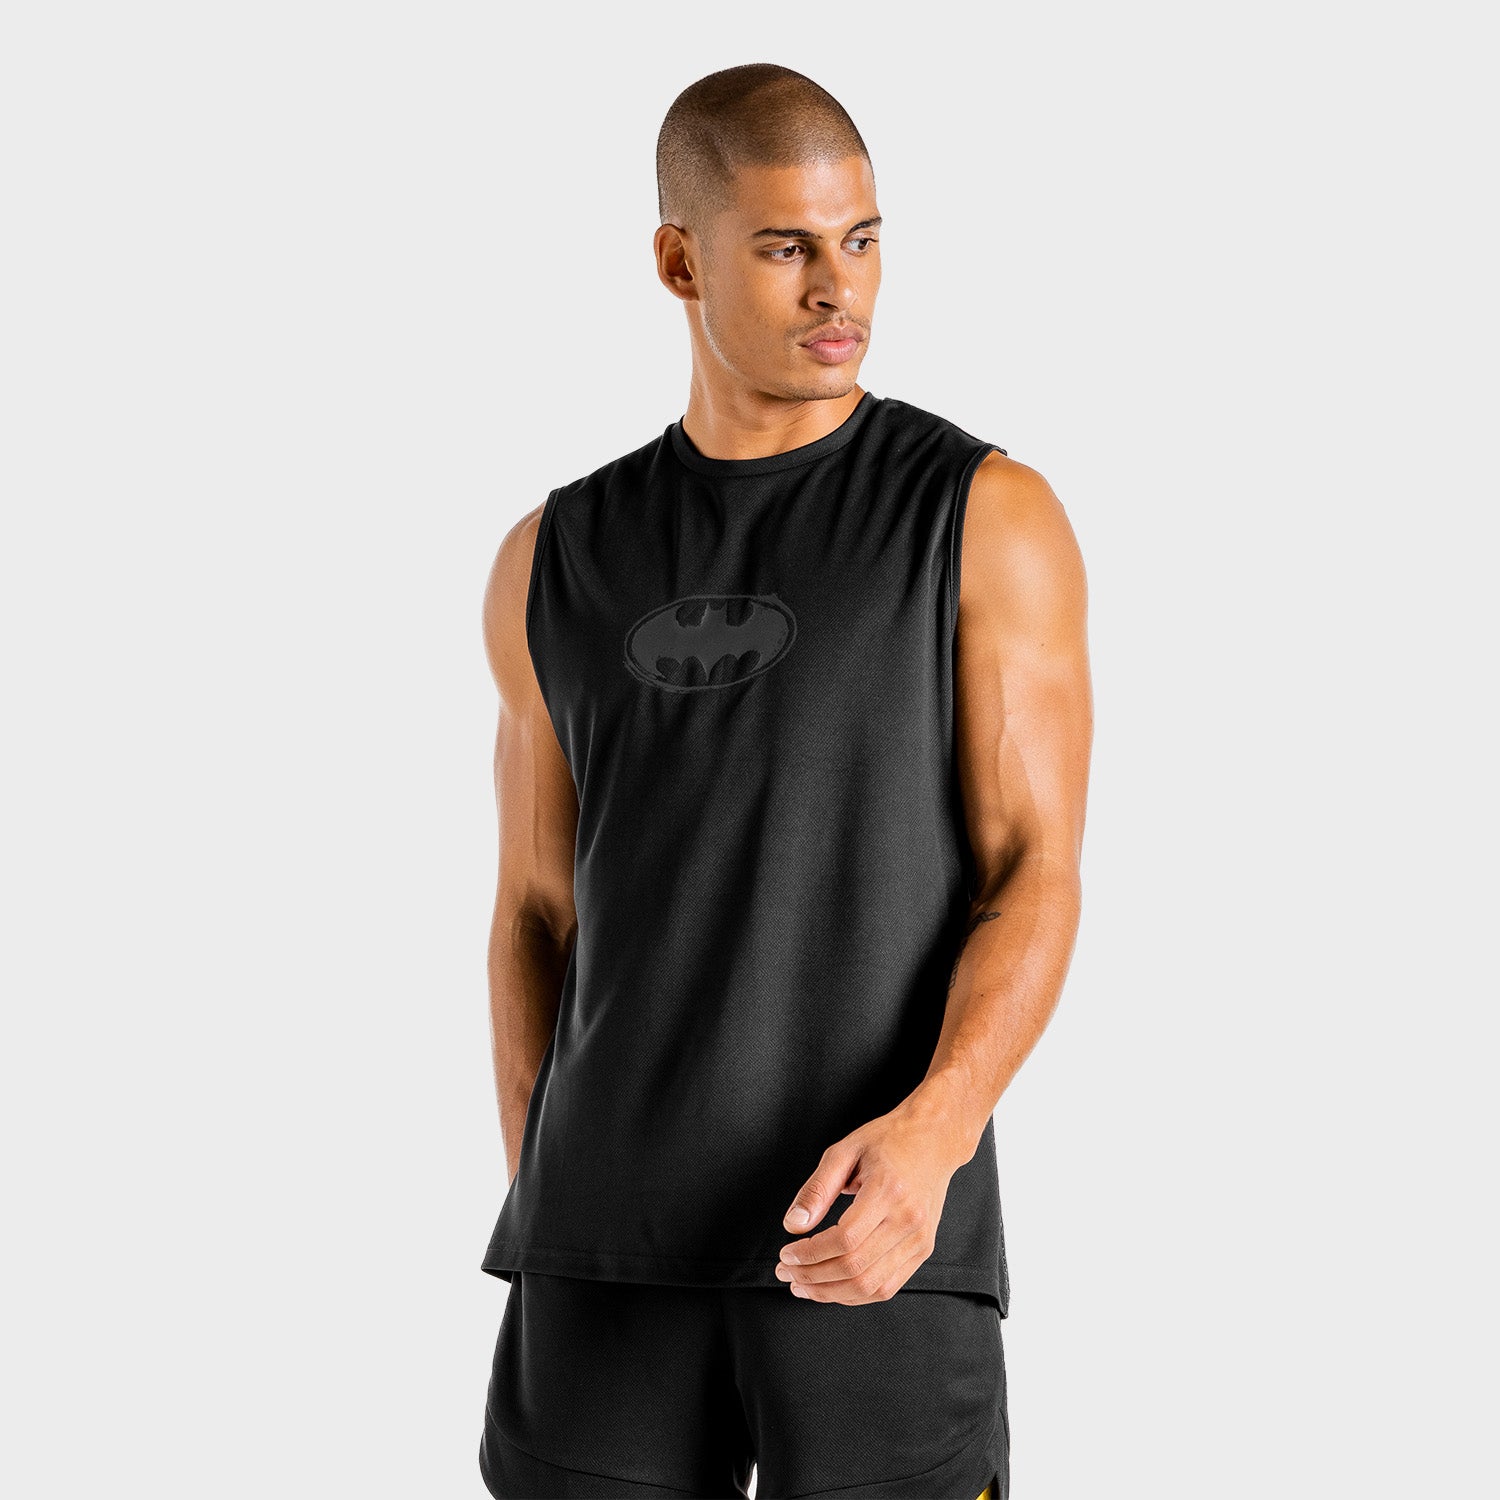 squatwolf-stringer-vests-for-men-batman-gym-tank-black-gym-wear